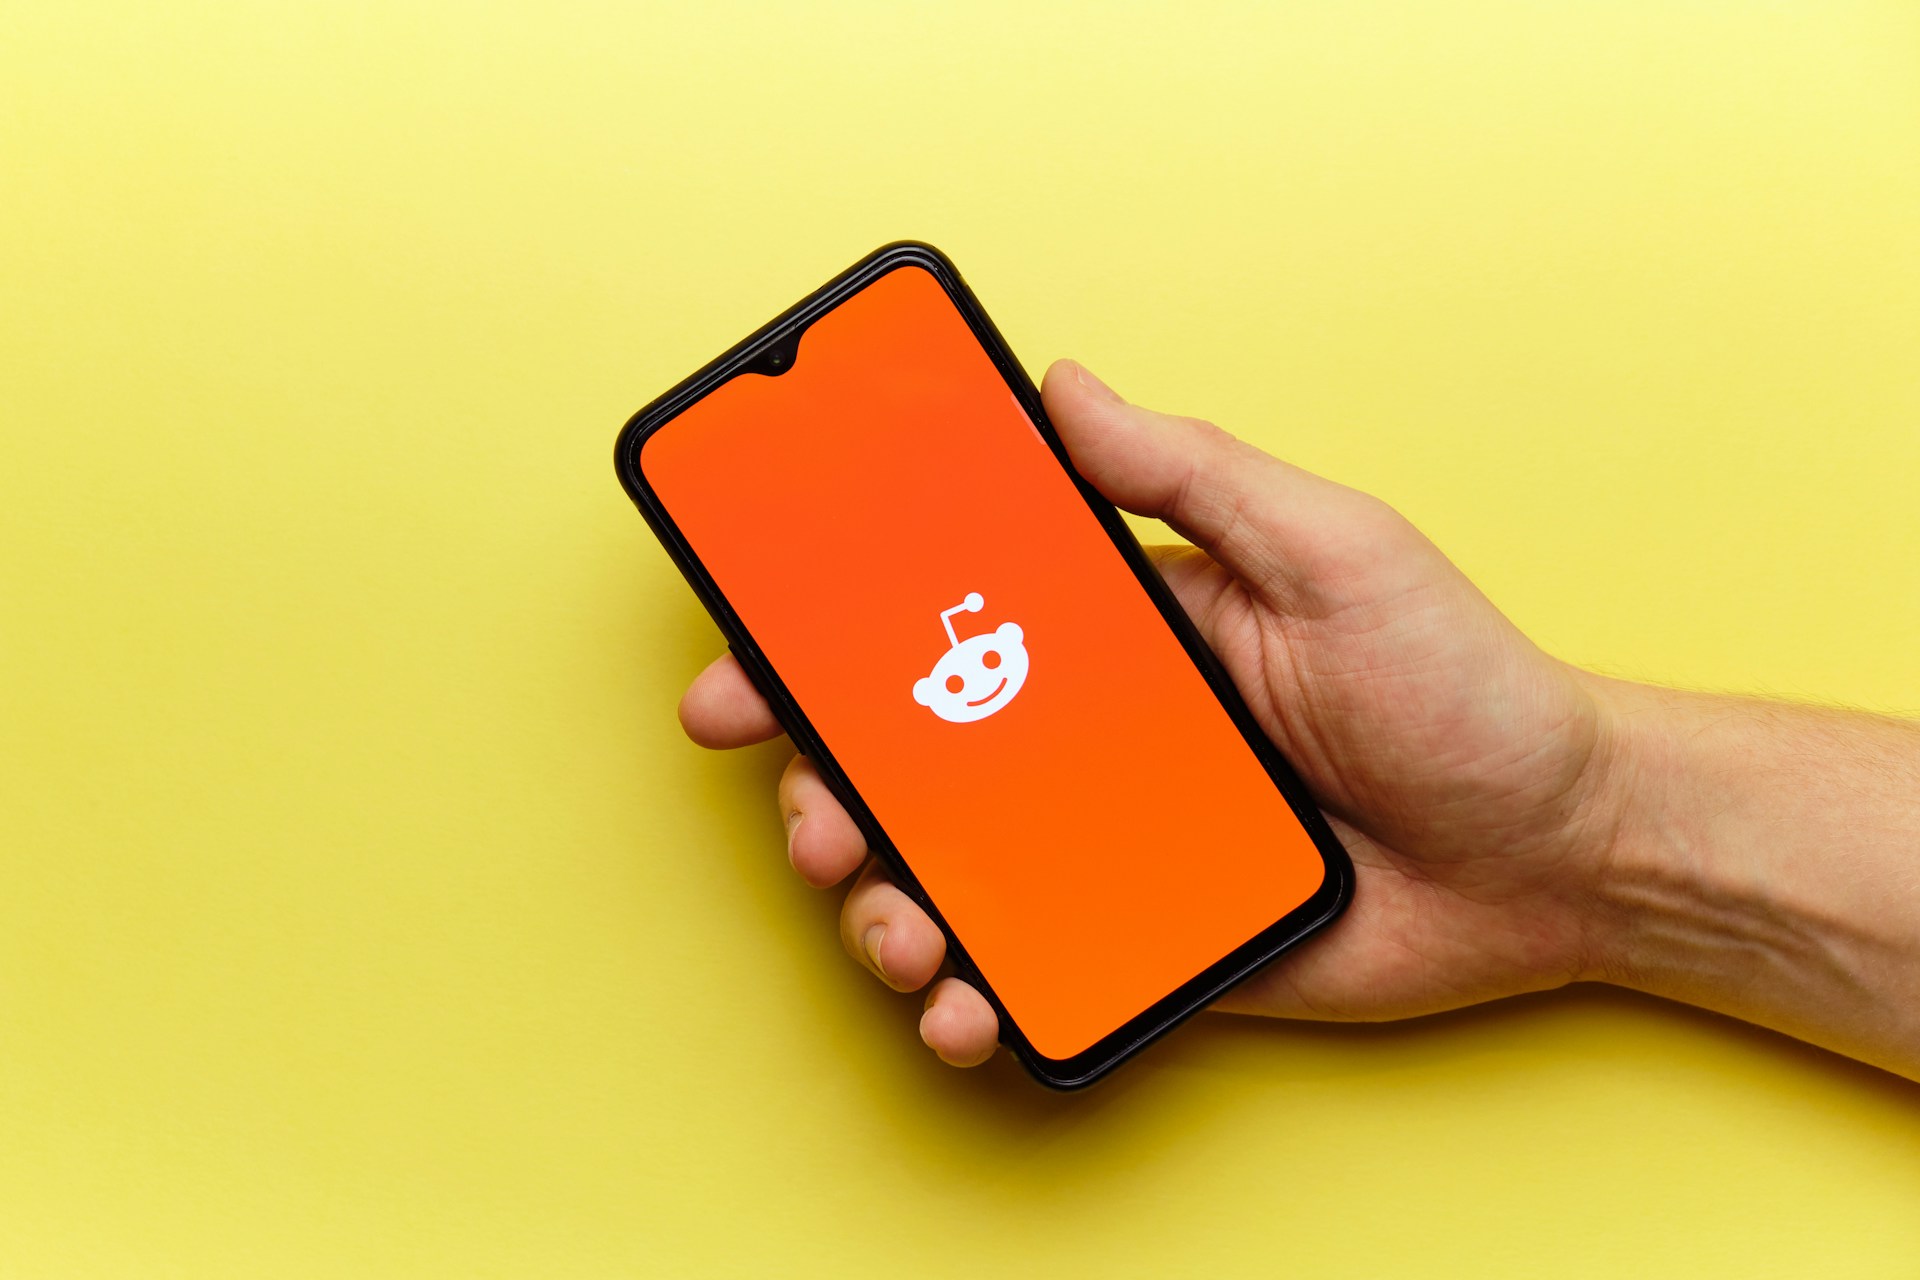 Auf einem gelben Hintergrund hält eine Hand ein Handy auf dem Mann das weiße Reddit-Symbol auf orangenen Hintergrund sieht